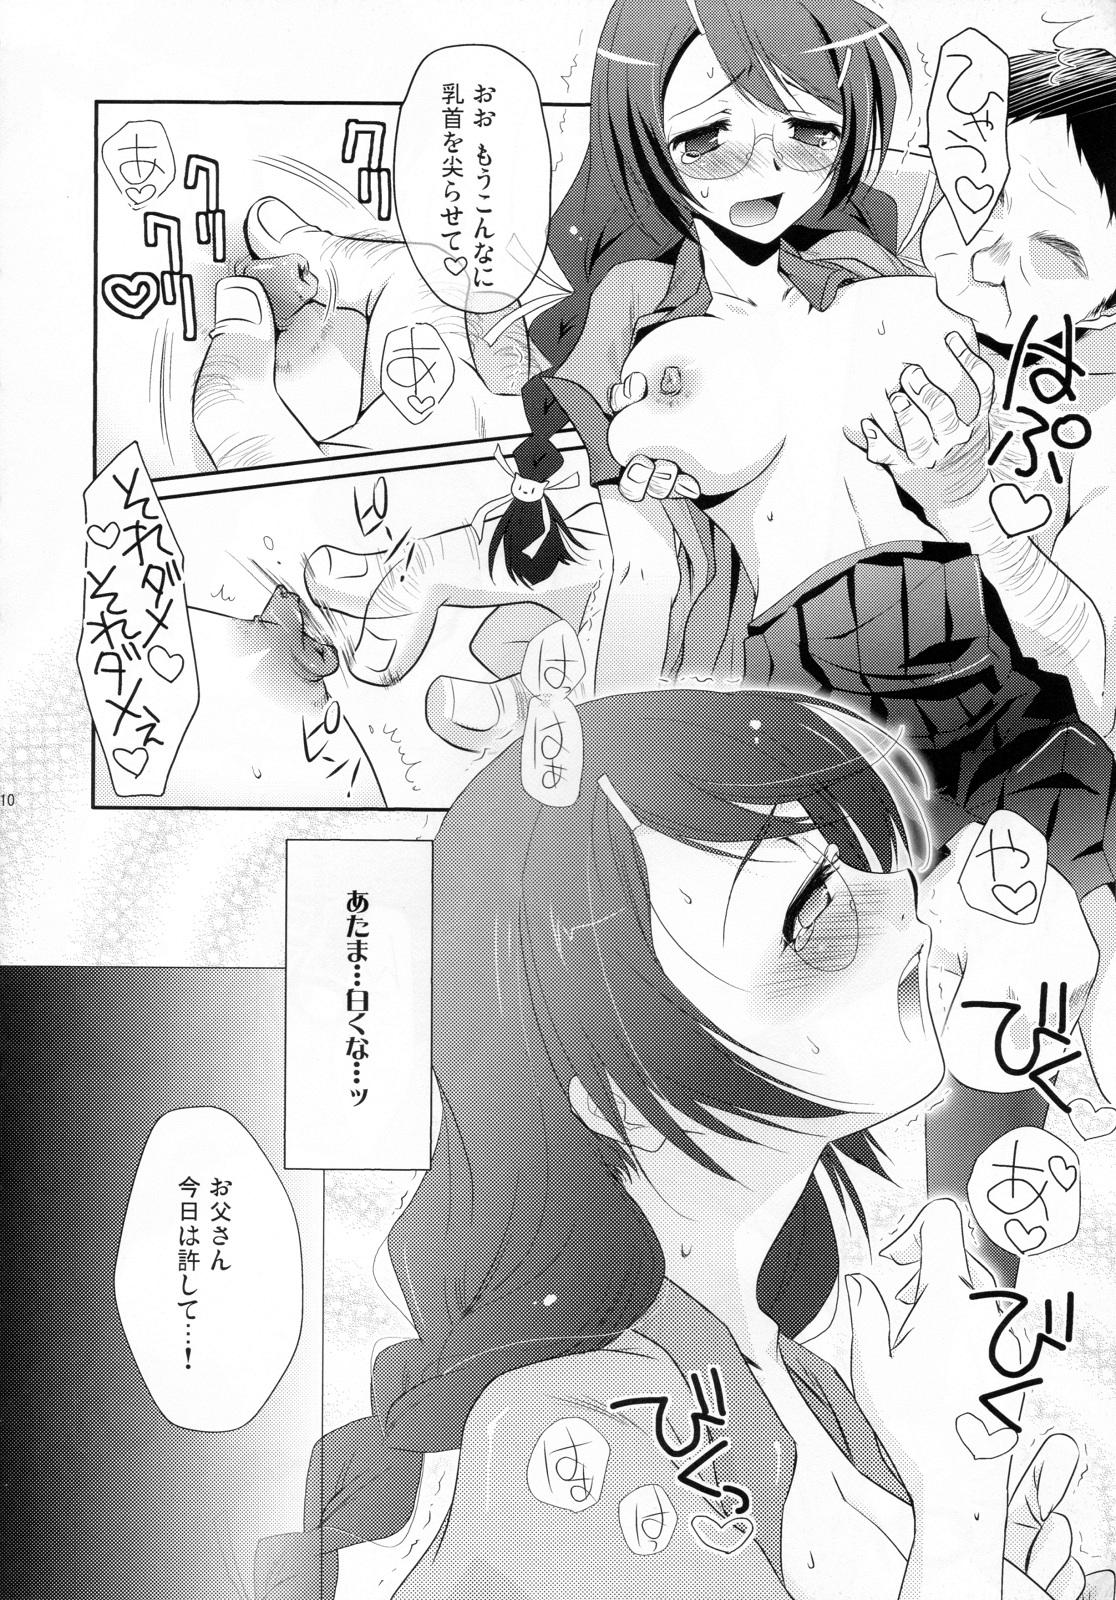 Exibicionismo Neko no inu ma ni Nezumi wa Odoru - Bakemonogatari Shecock - Page 10